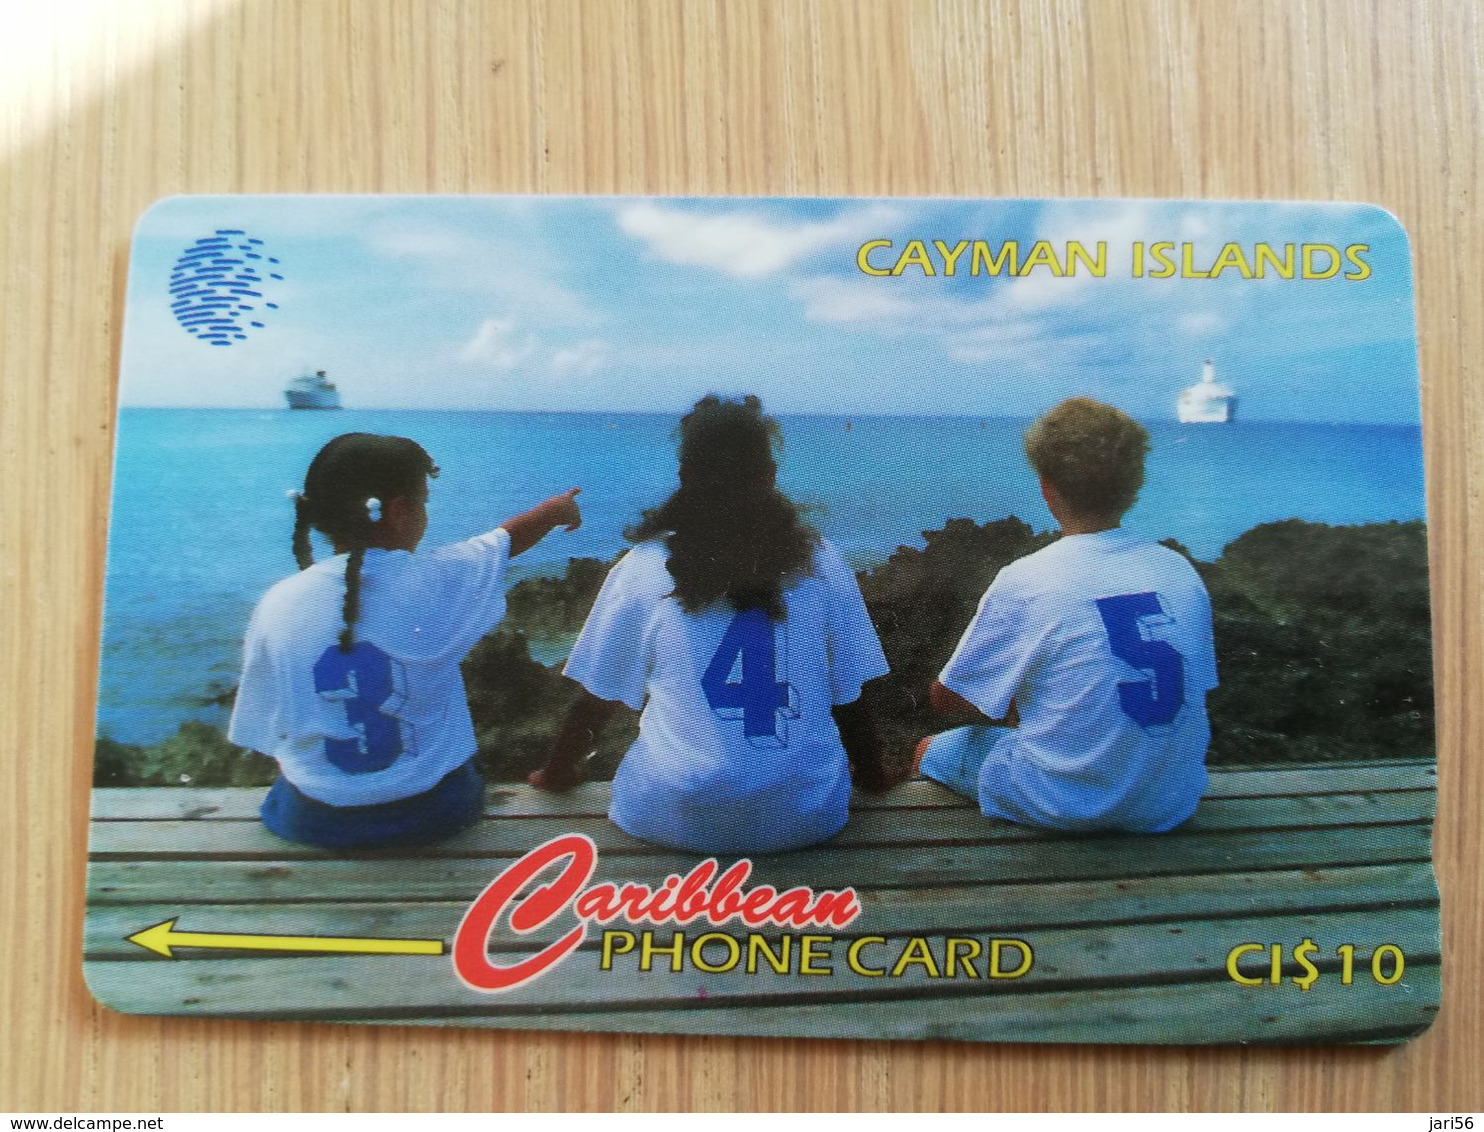 CAYMAN ISLANDS  CI $ 10,-  CAY-156B CONTROL NR 156CCIB THREE CHILDREN SITTING     Fine Used Card  ** 3113** - Kaimaninseln (Cayman I.)